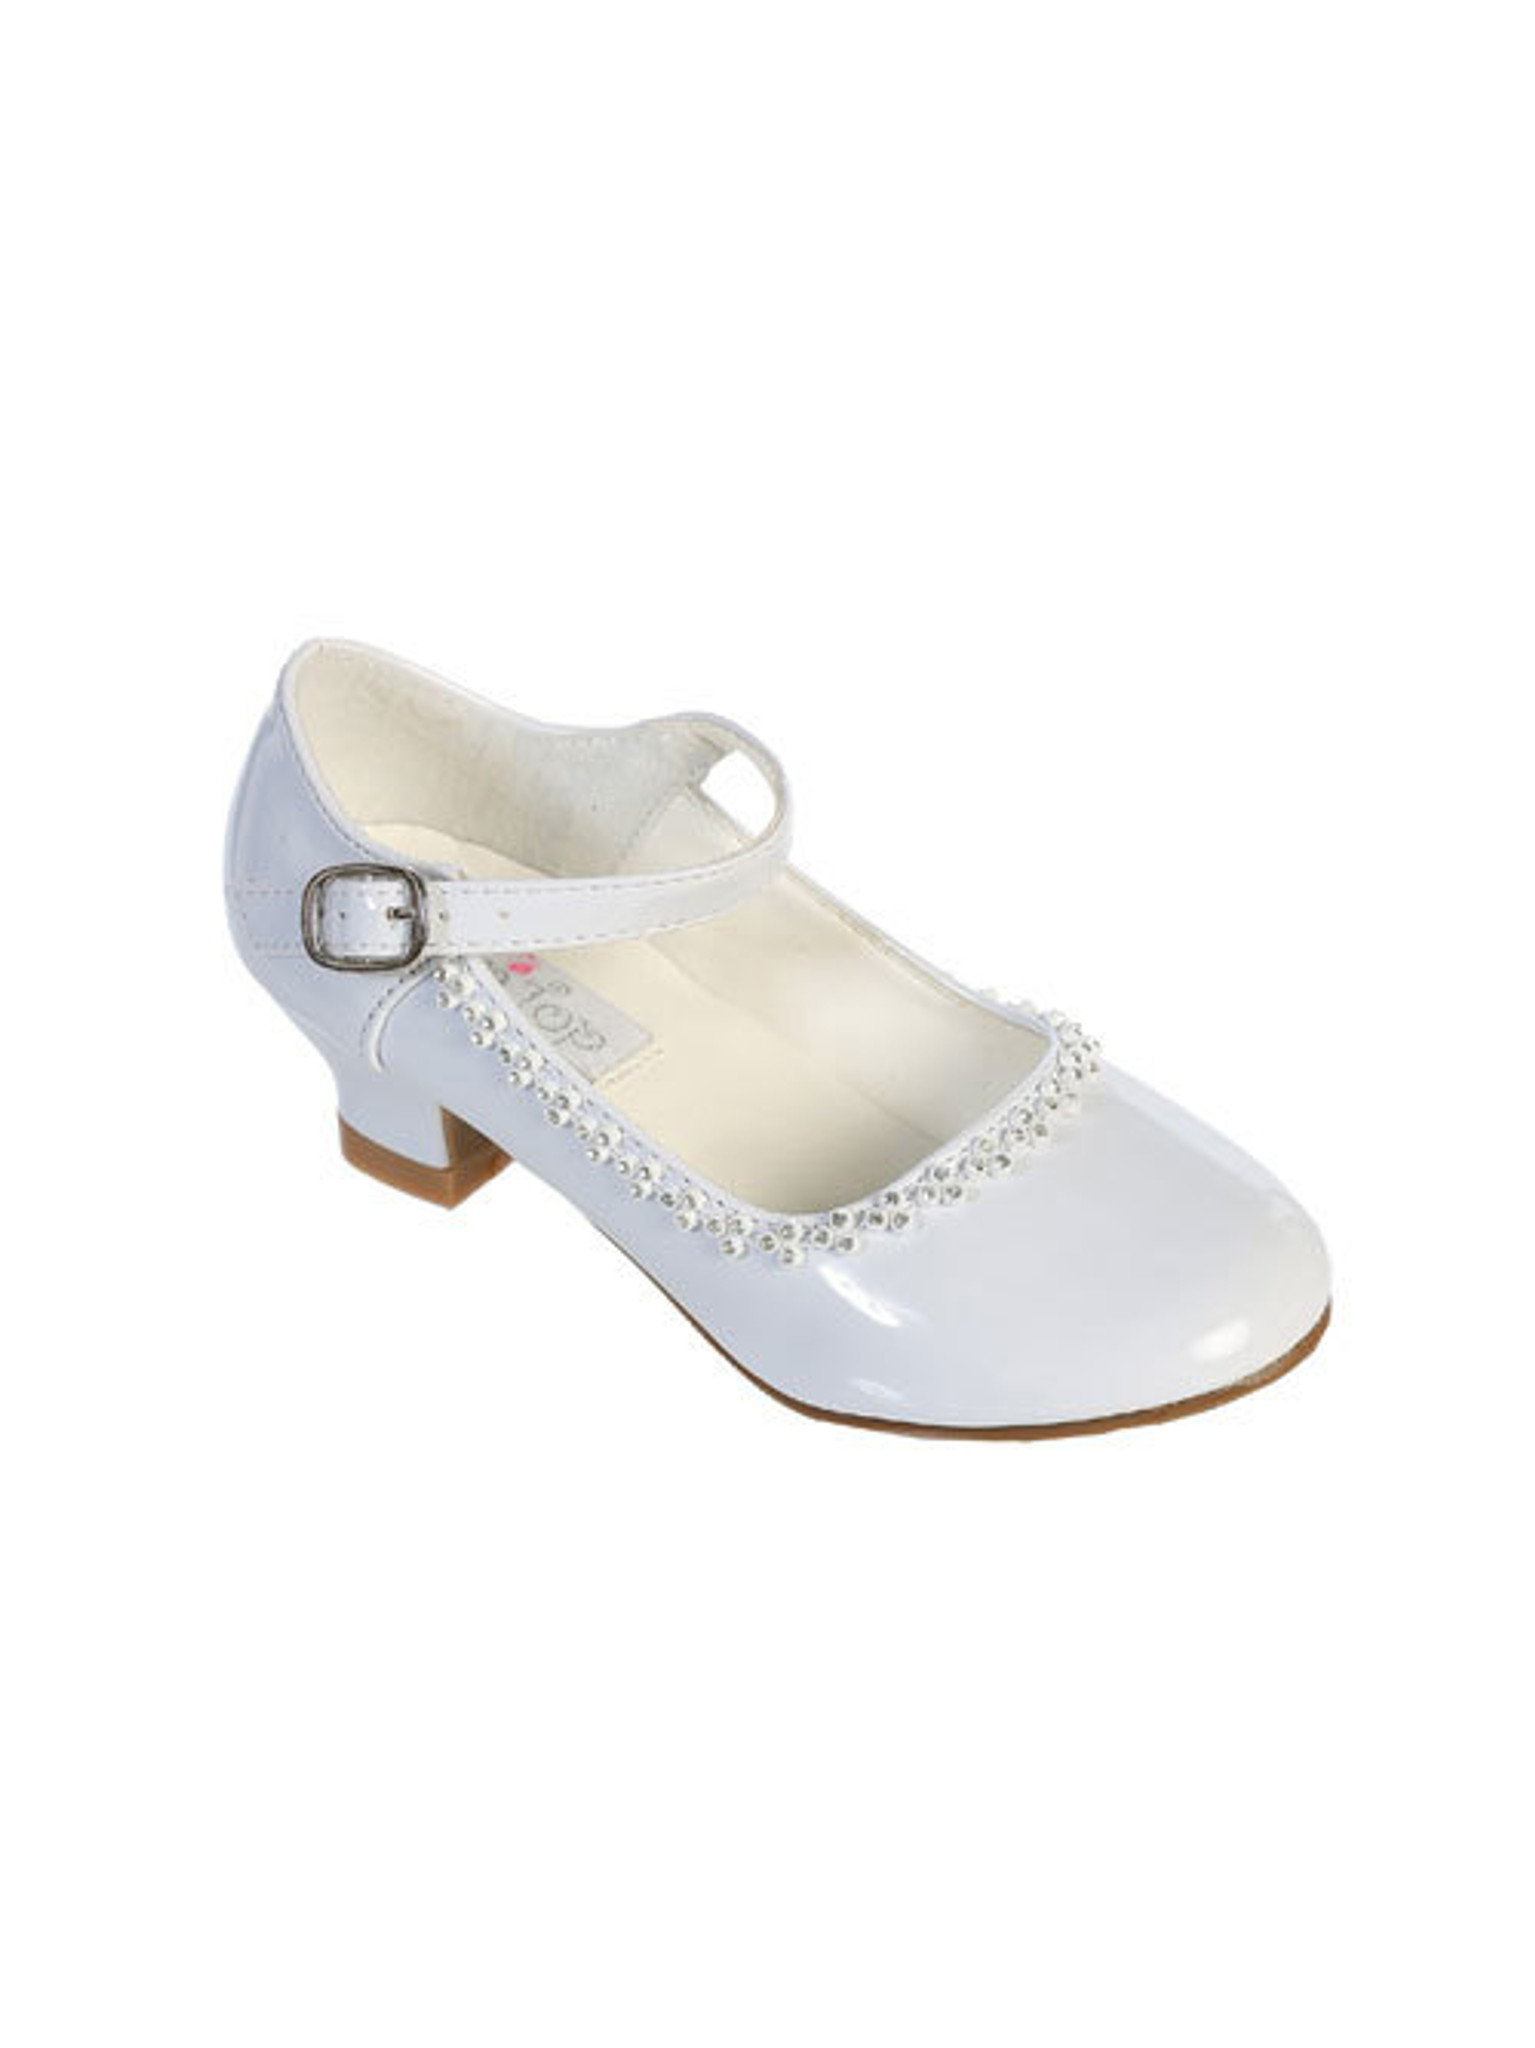 little girls high heel shoes kids high heels childrens high heels silver |  eBay